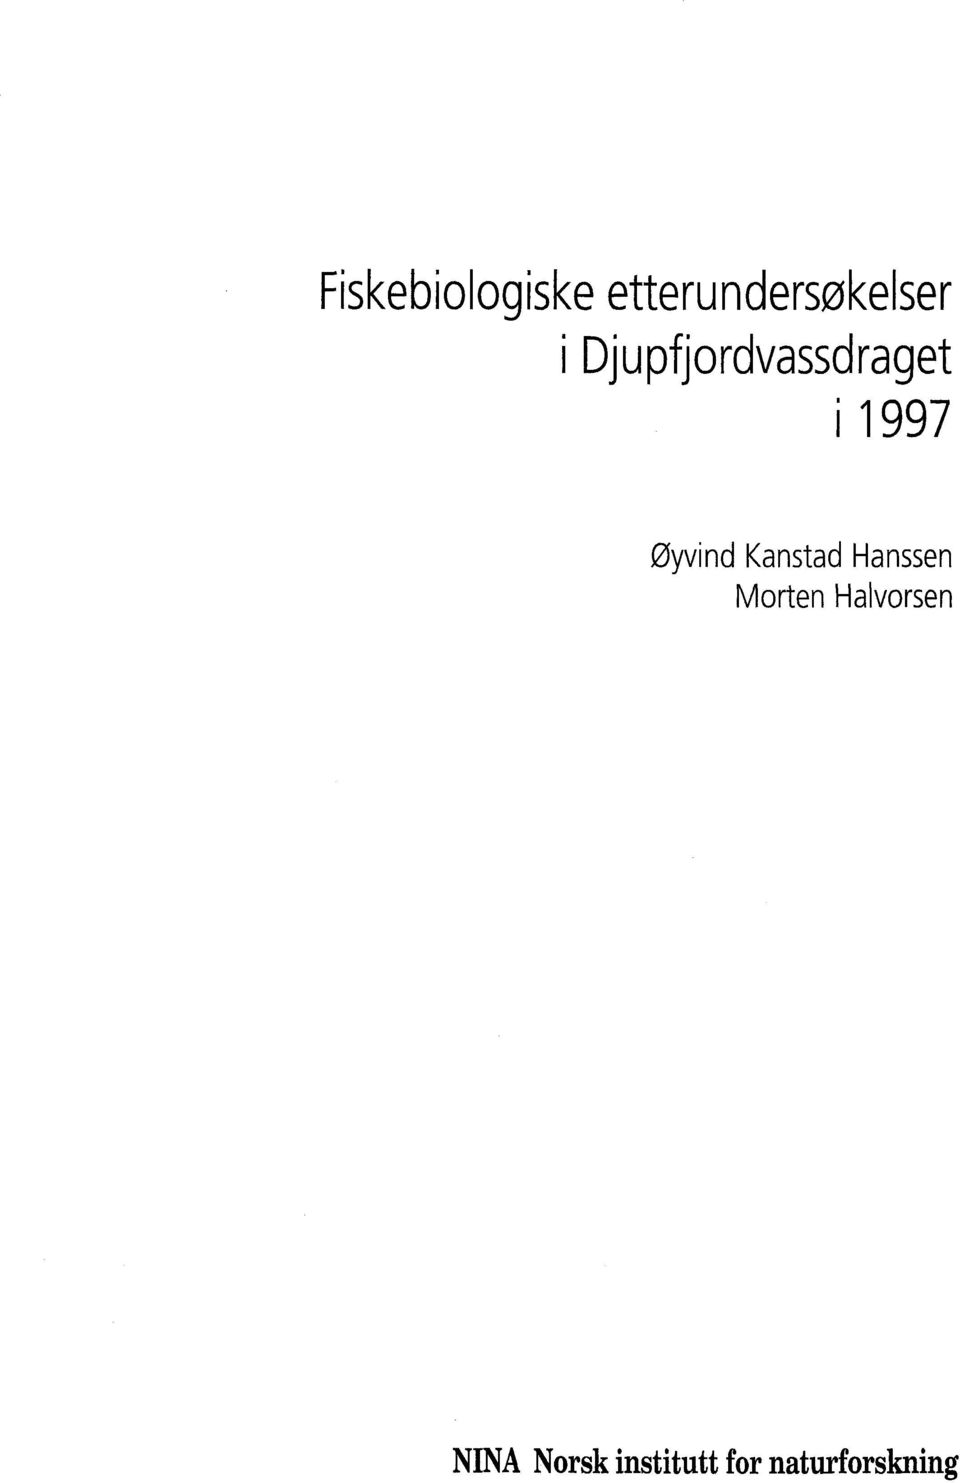 Kanstad Hanssen Morten Halvorsen